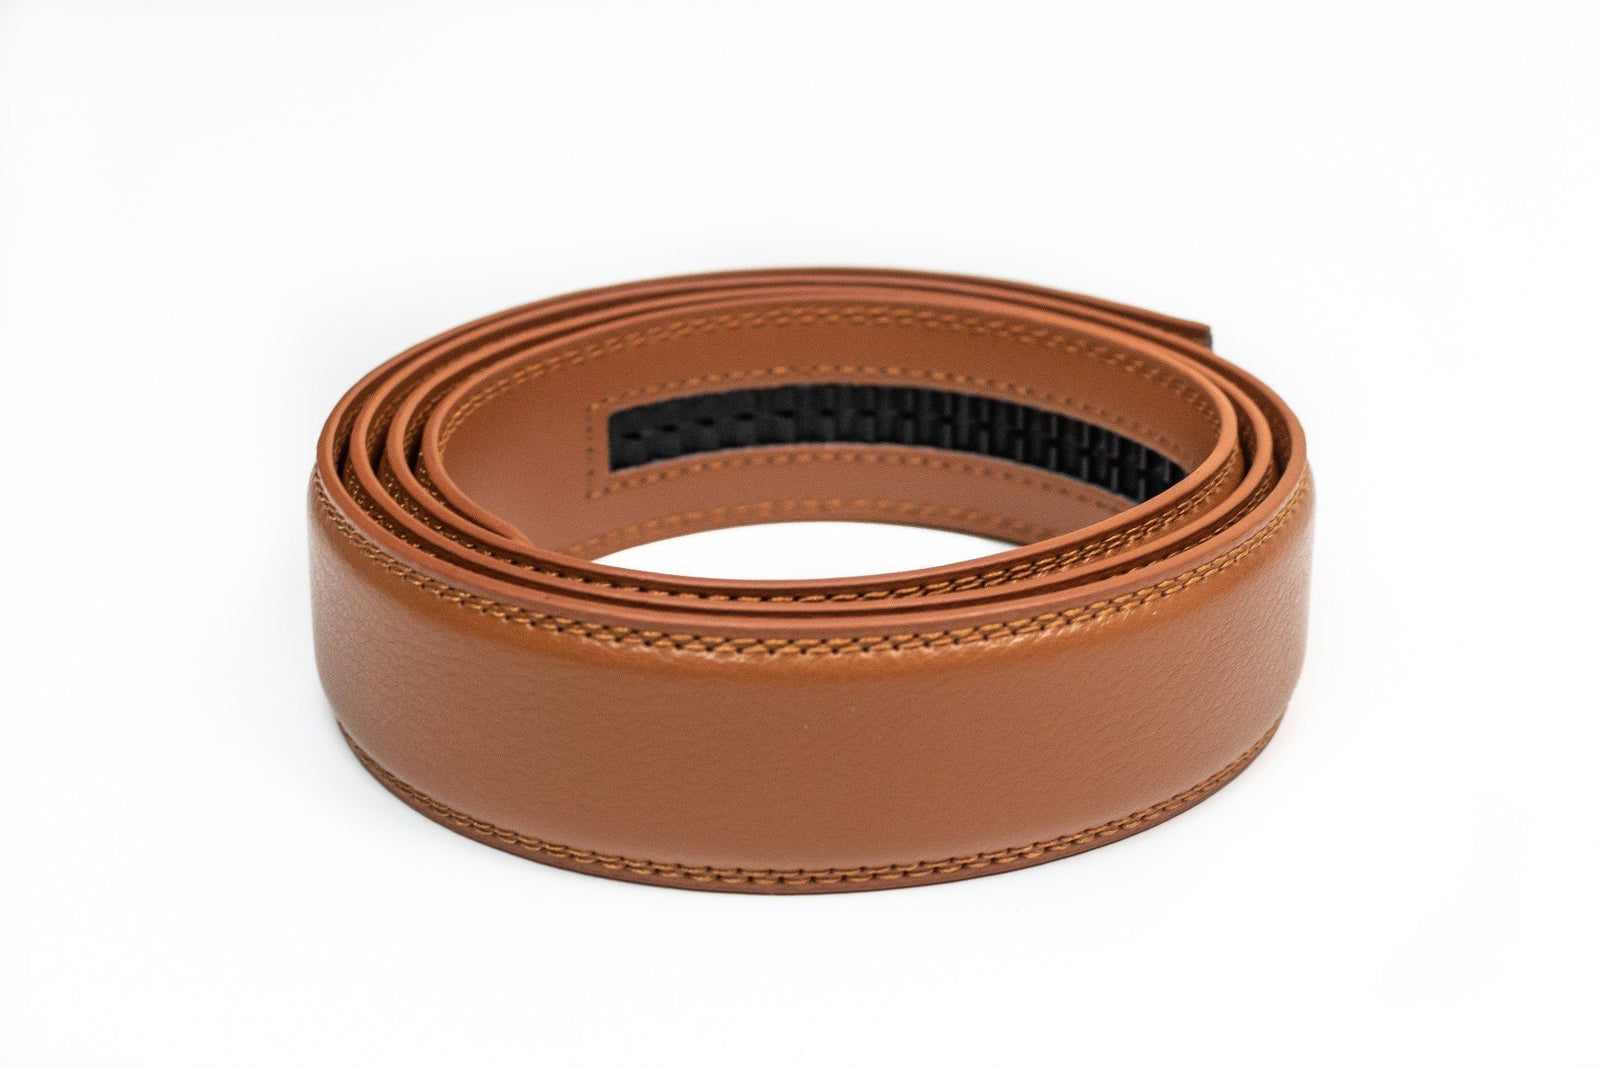 Men’s Ratchet Belts | Canvas or Leather Ratchet-Style Belts - Tough Apparel